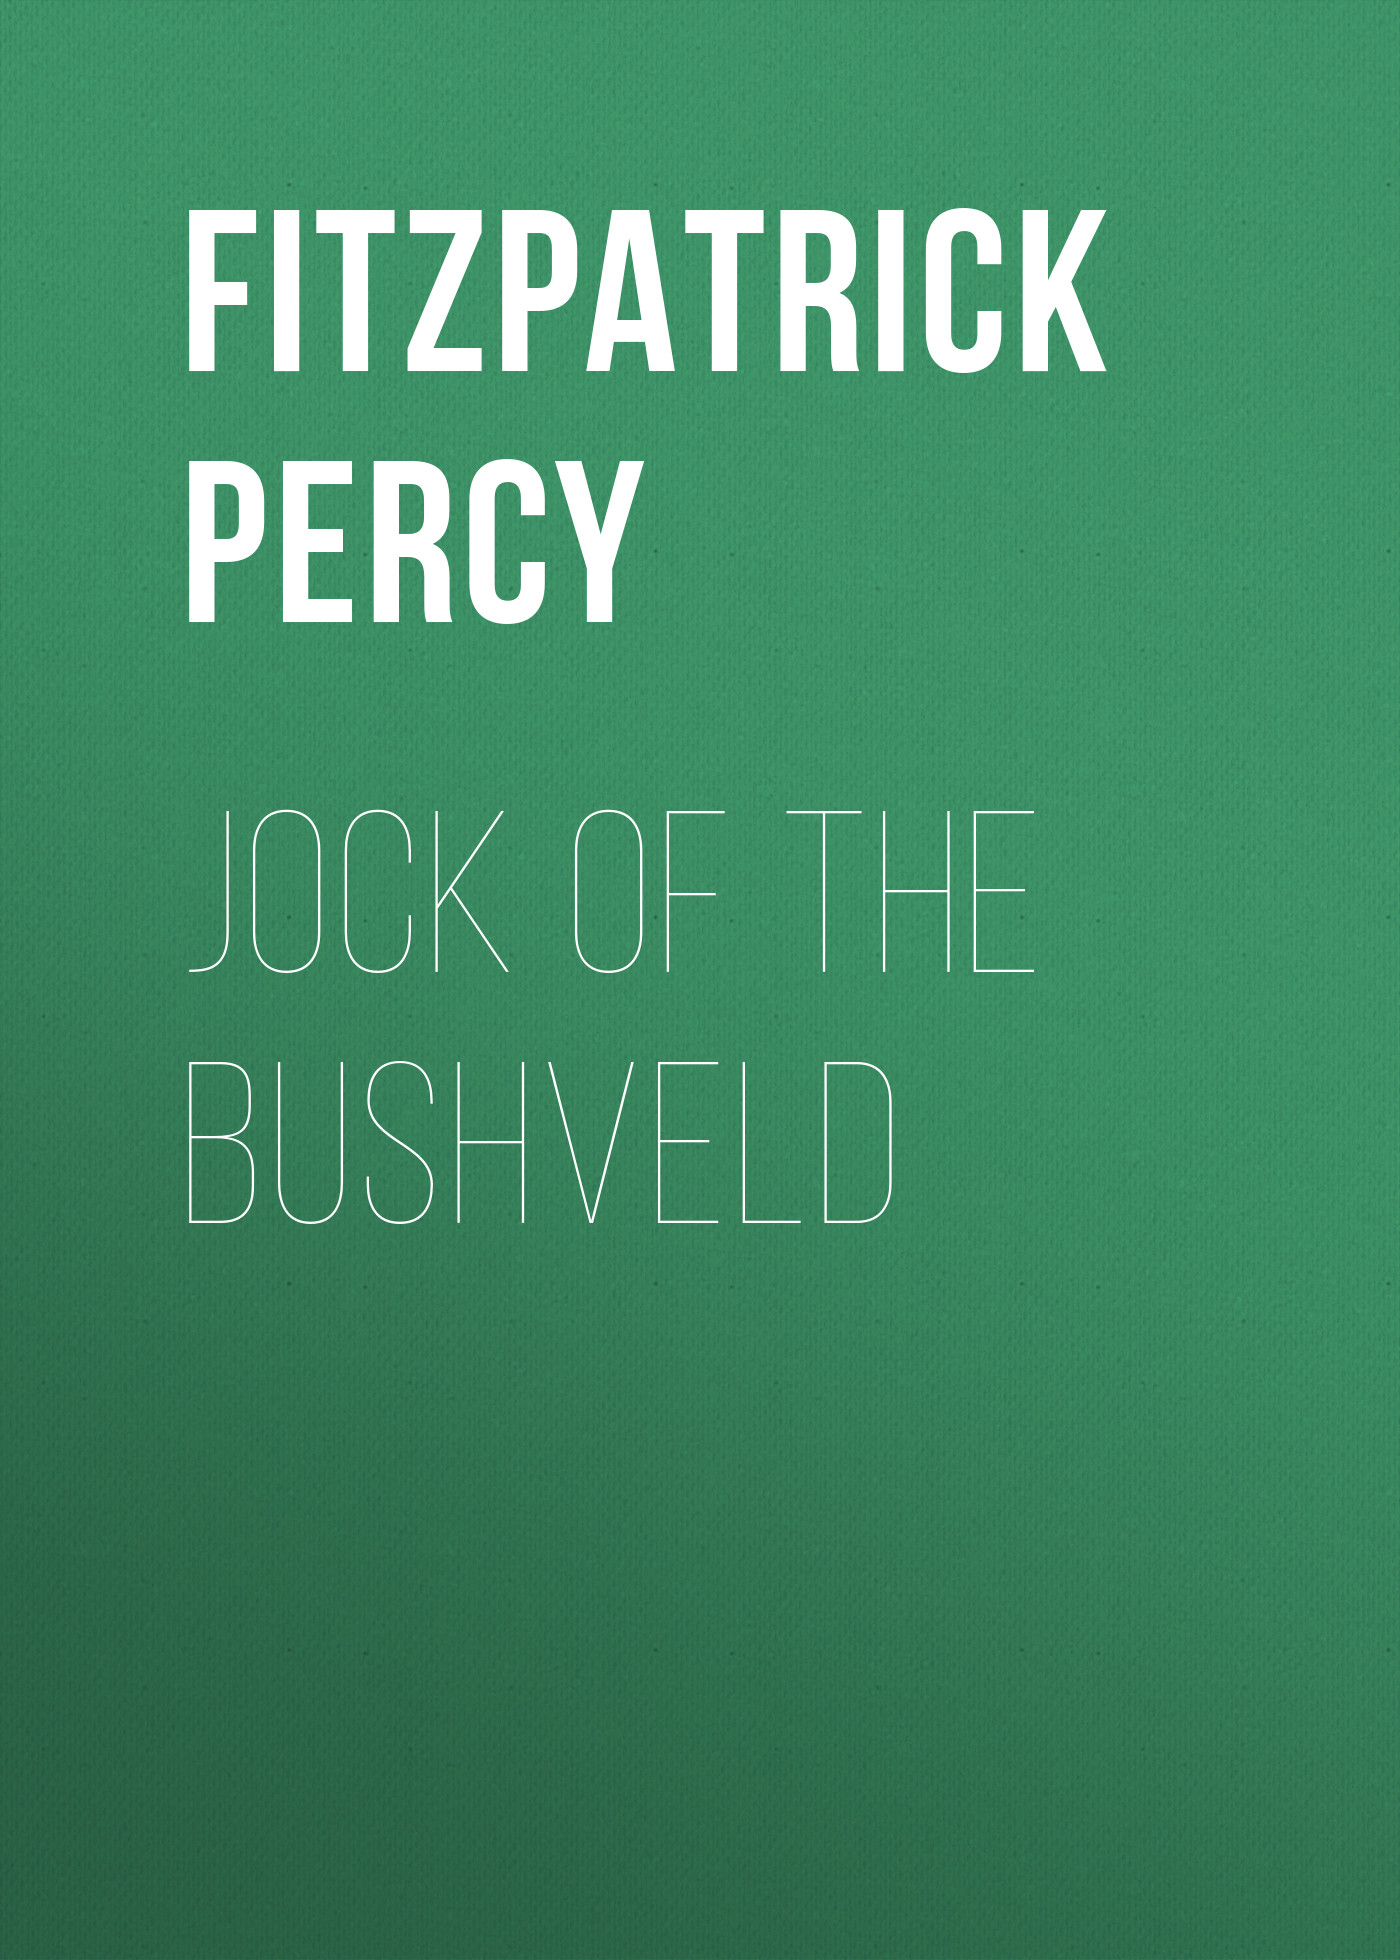 Книга Jock of the Bushveld из серии , созданная Percy Fitzpatrick, может относится к жанру Старинная литература: прочее, Зарубежная старинная литература, Зарубежная классика. Стоимость электронной книги Jock of the Bushveld с идентификатором 24727377 составляет 0 руб.